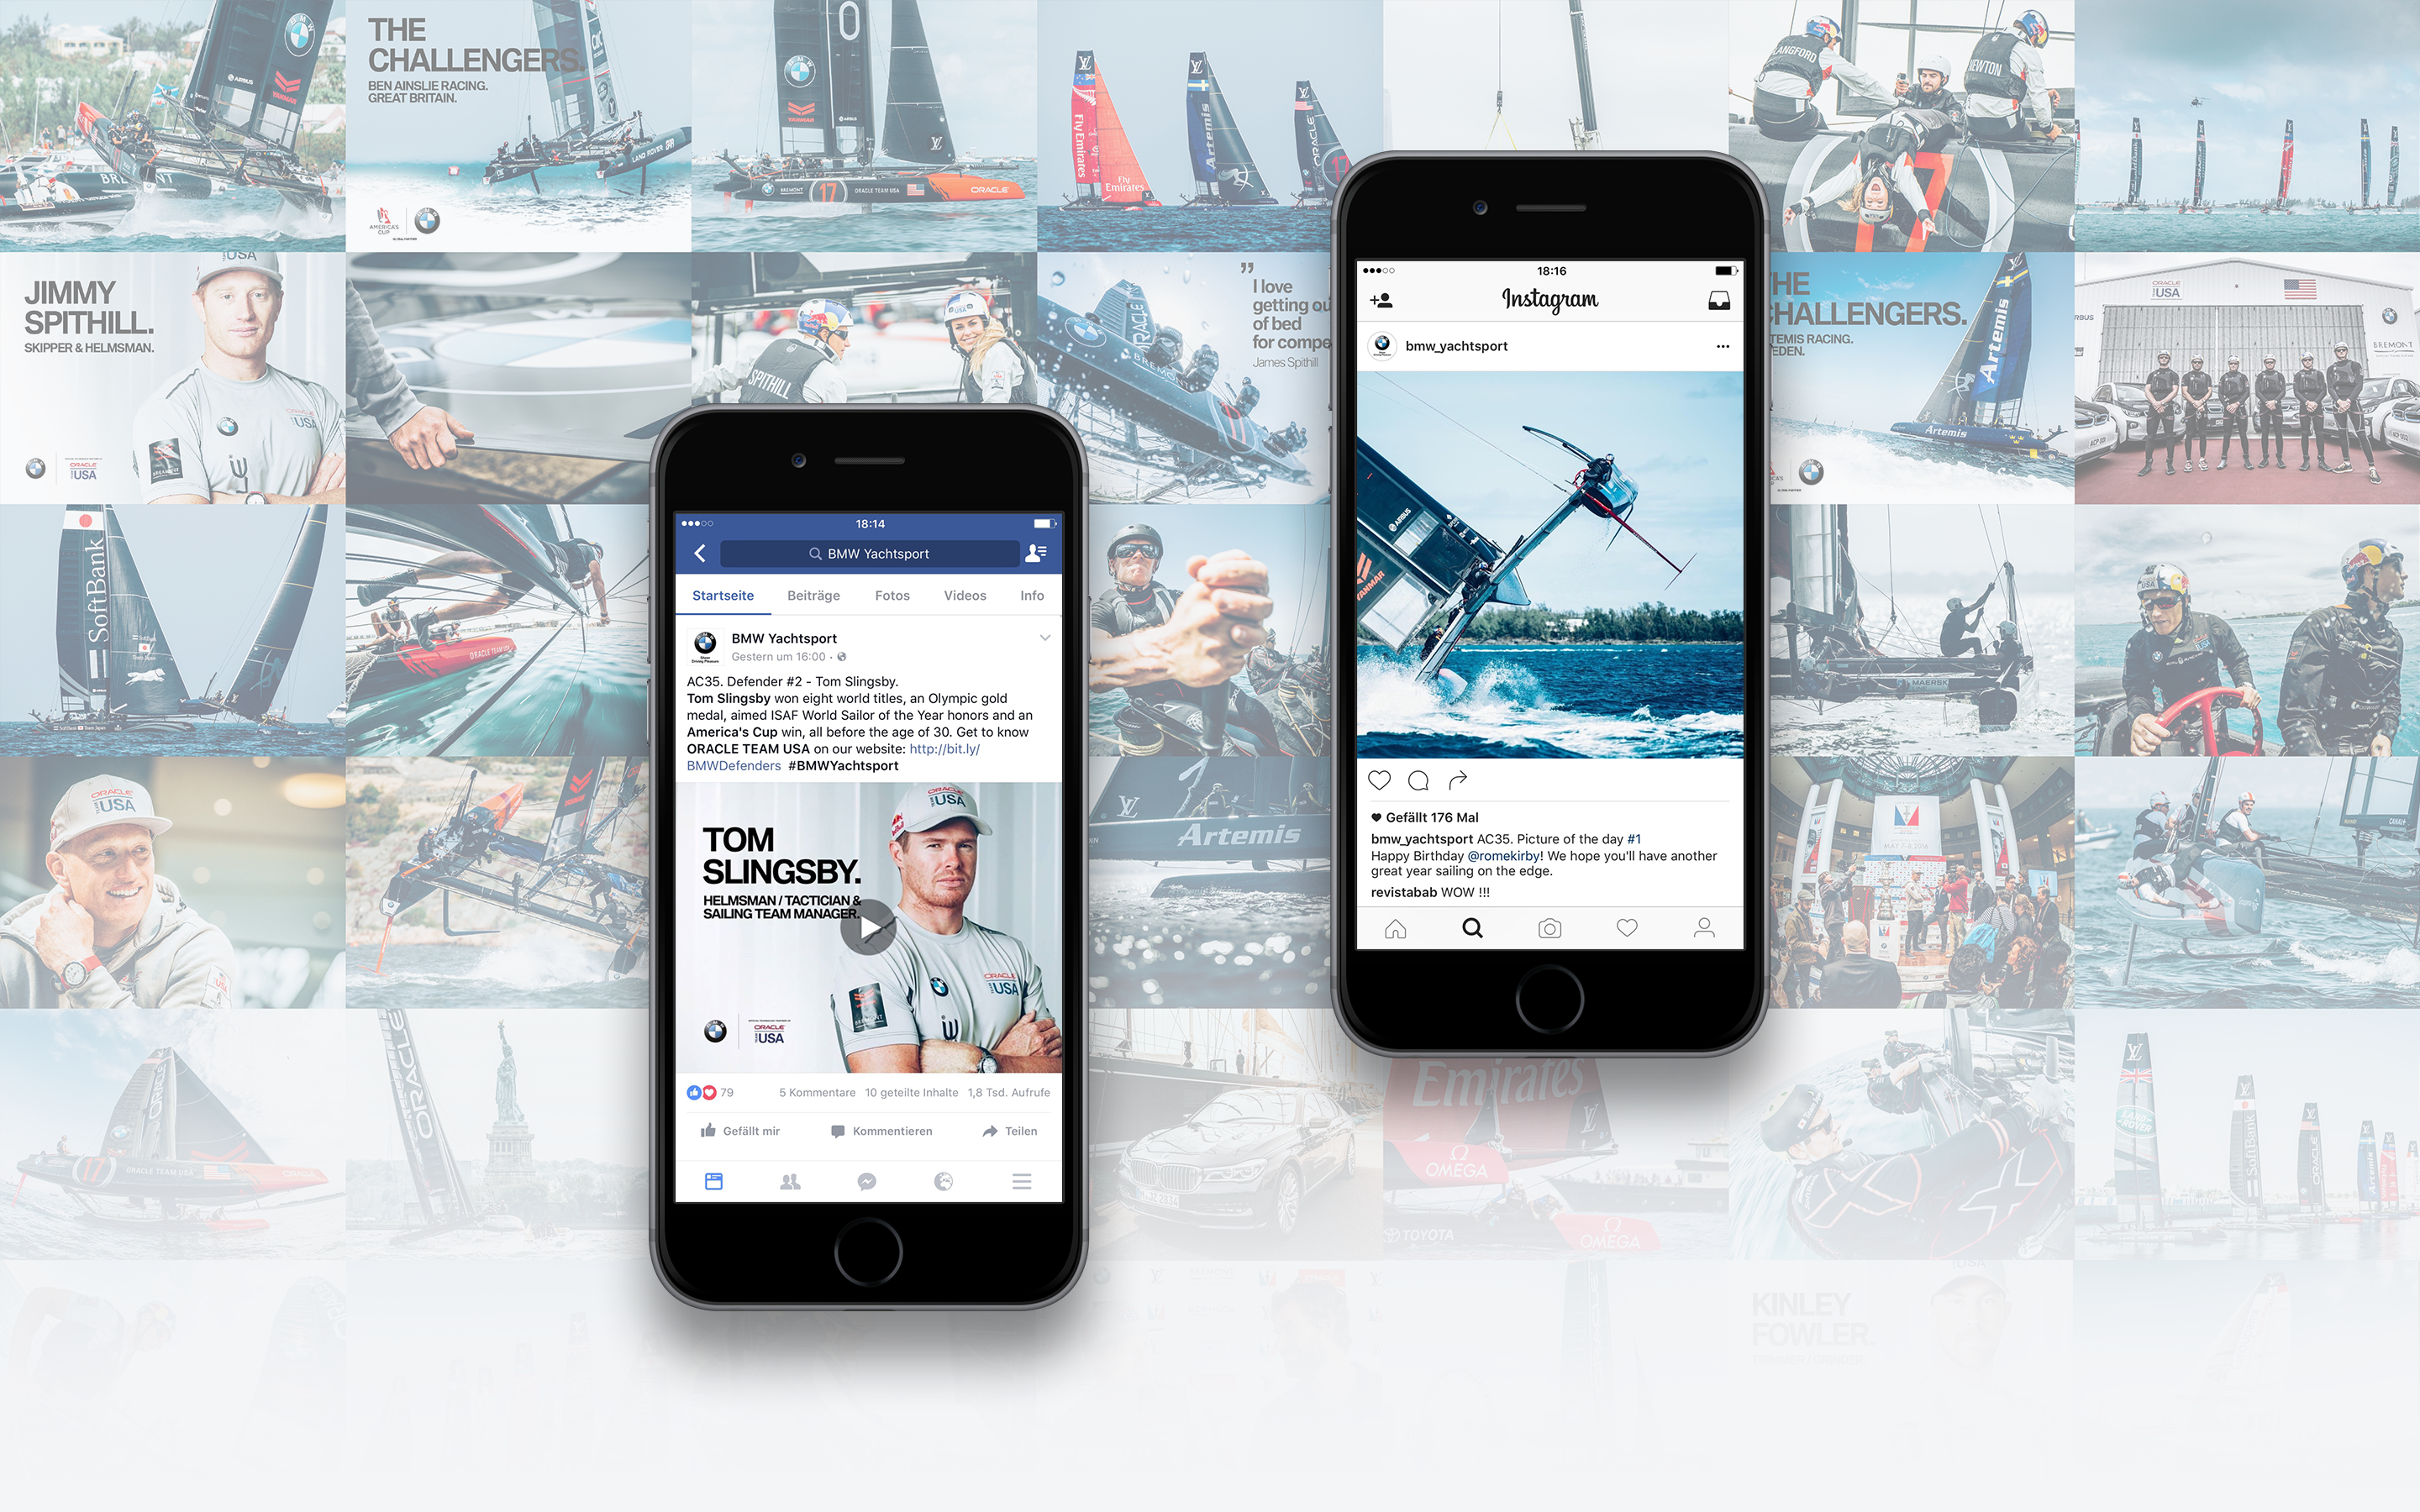 pascher-heinz-bmw-yachtsport-digital-communication-social-media